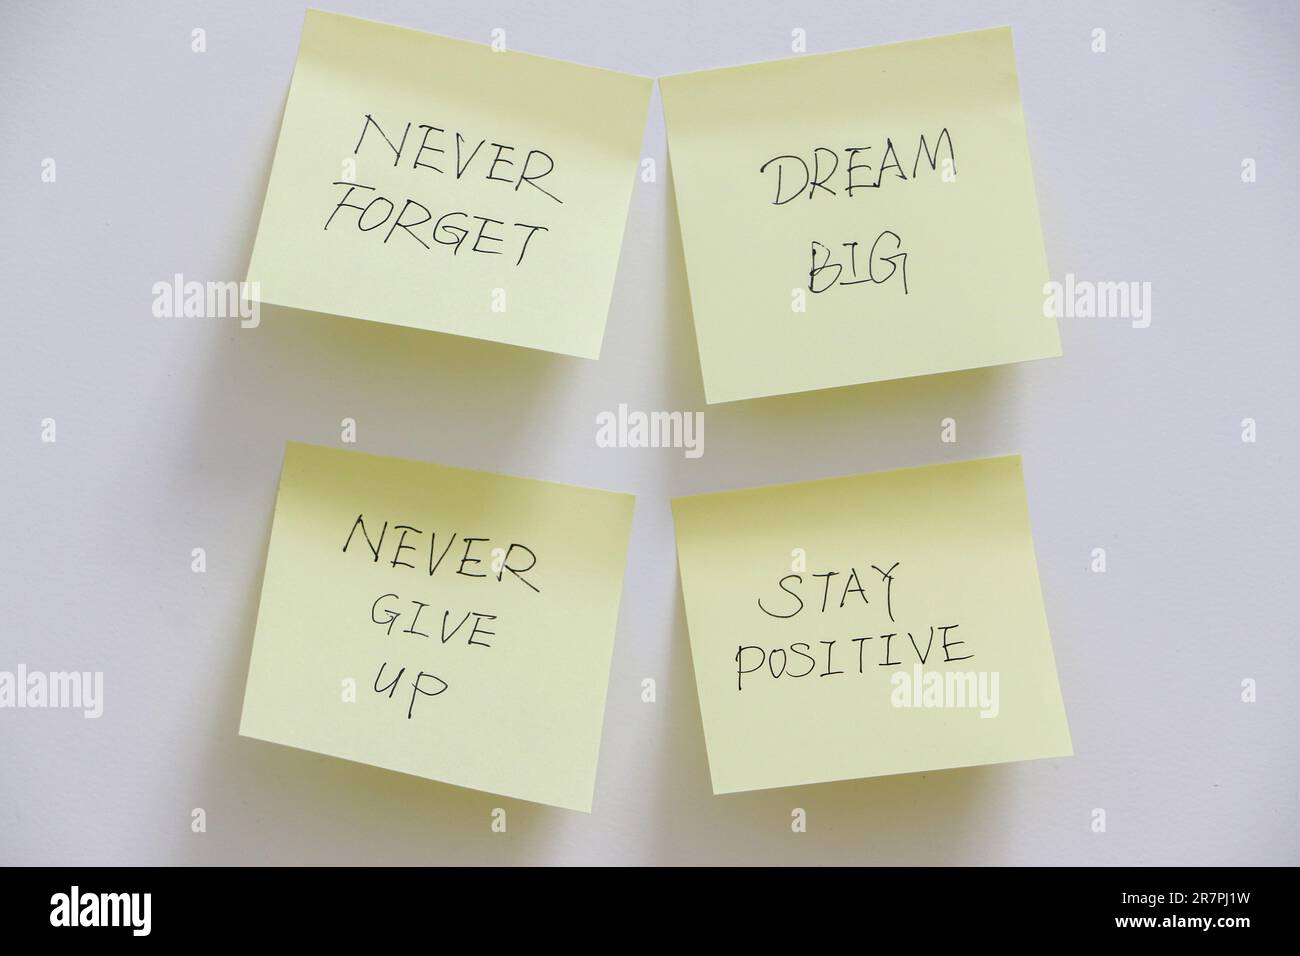 Concetto di motivazione, quattro note adesive gialle sulla parete bianca con messaggi ispiratori per ricordarti di sognare in grande, non arrenderti mai e rimanere positivo Foto Stock